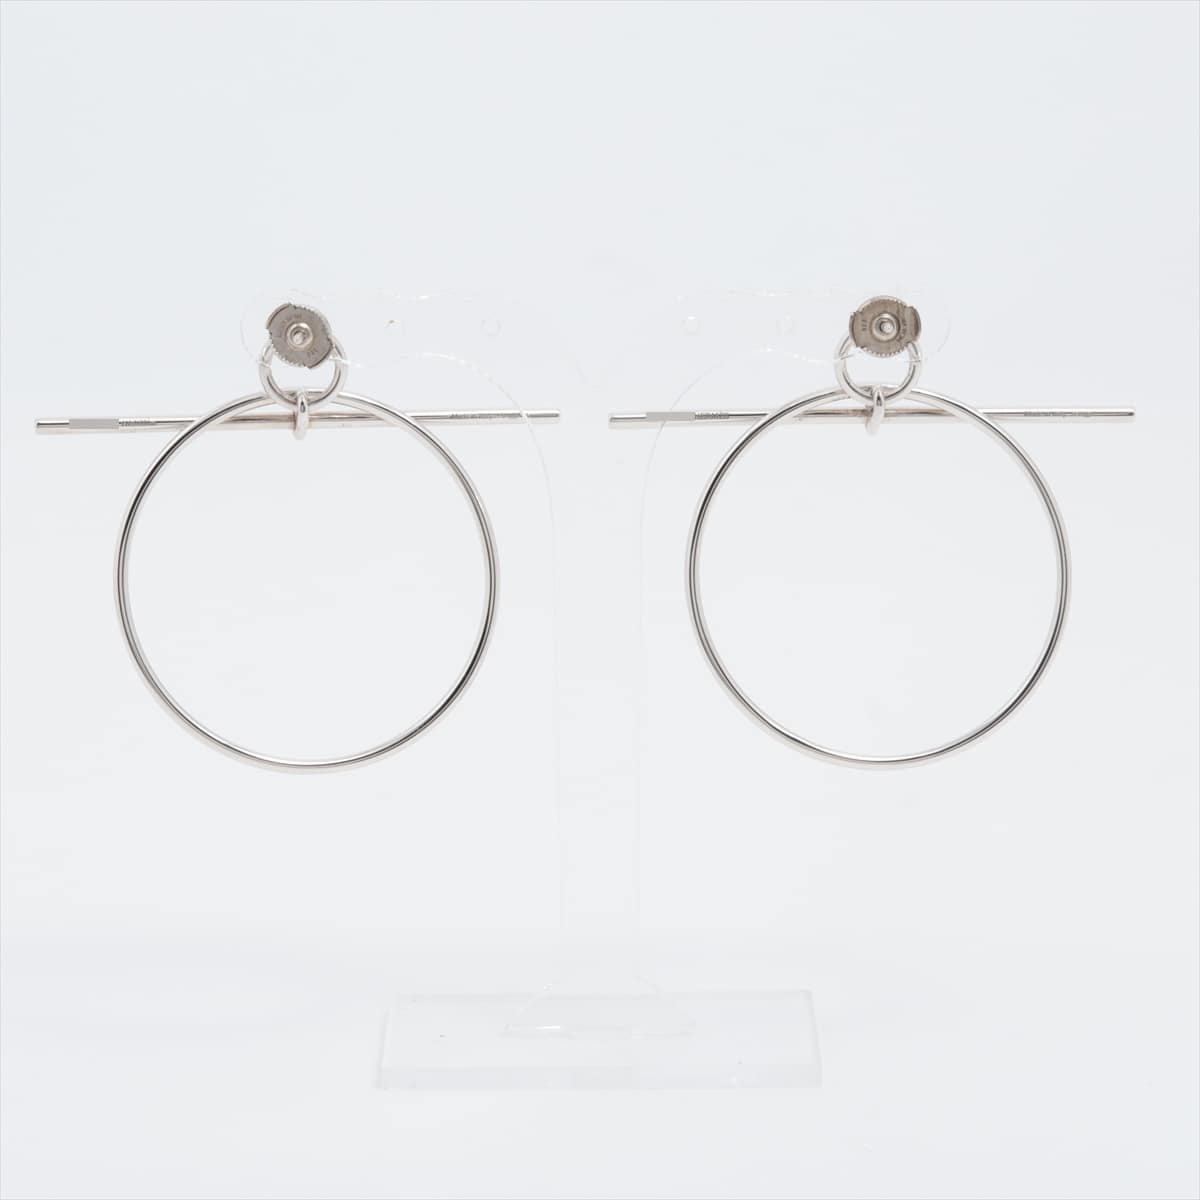 Hermès Loop Medium Piercing jewelry (for both ears) 925 11.0g Silver